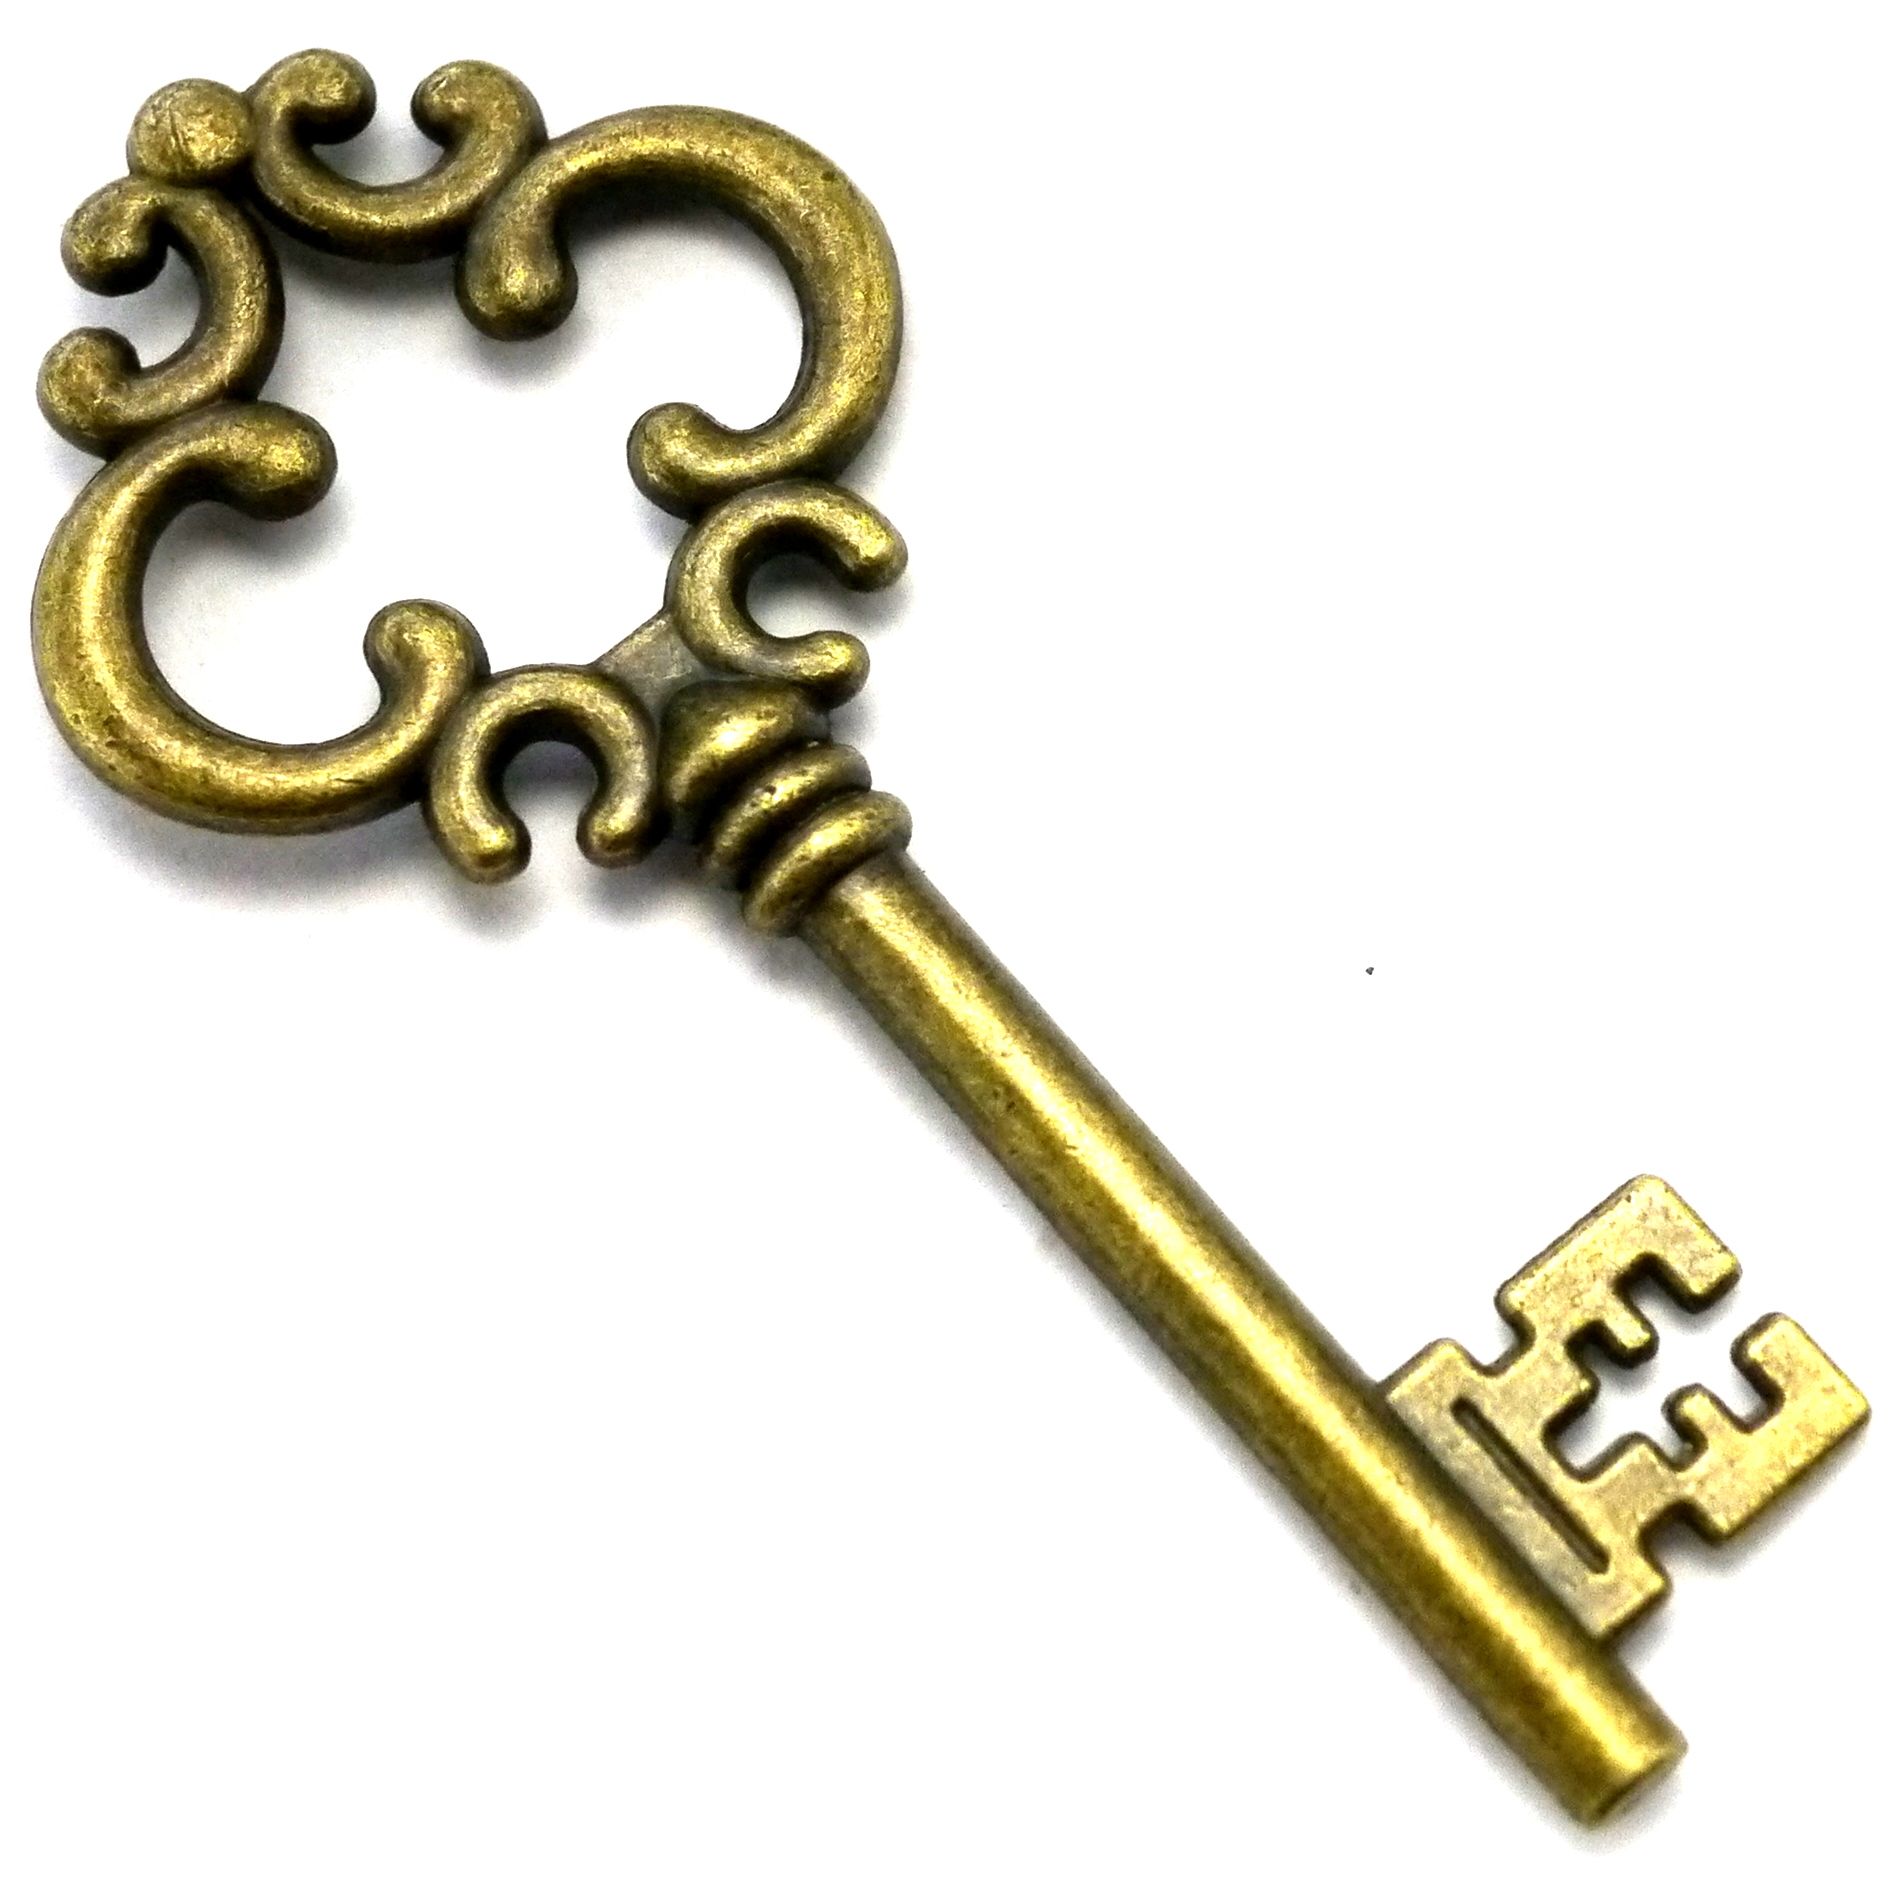 Antique key clip.